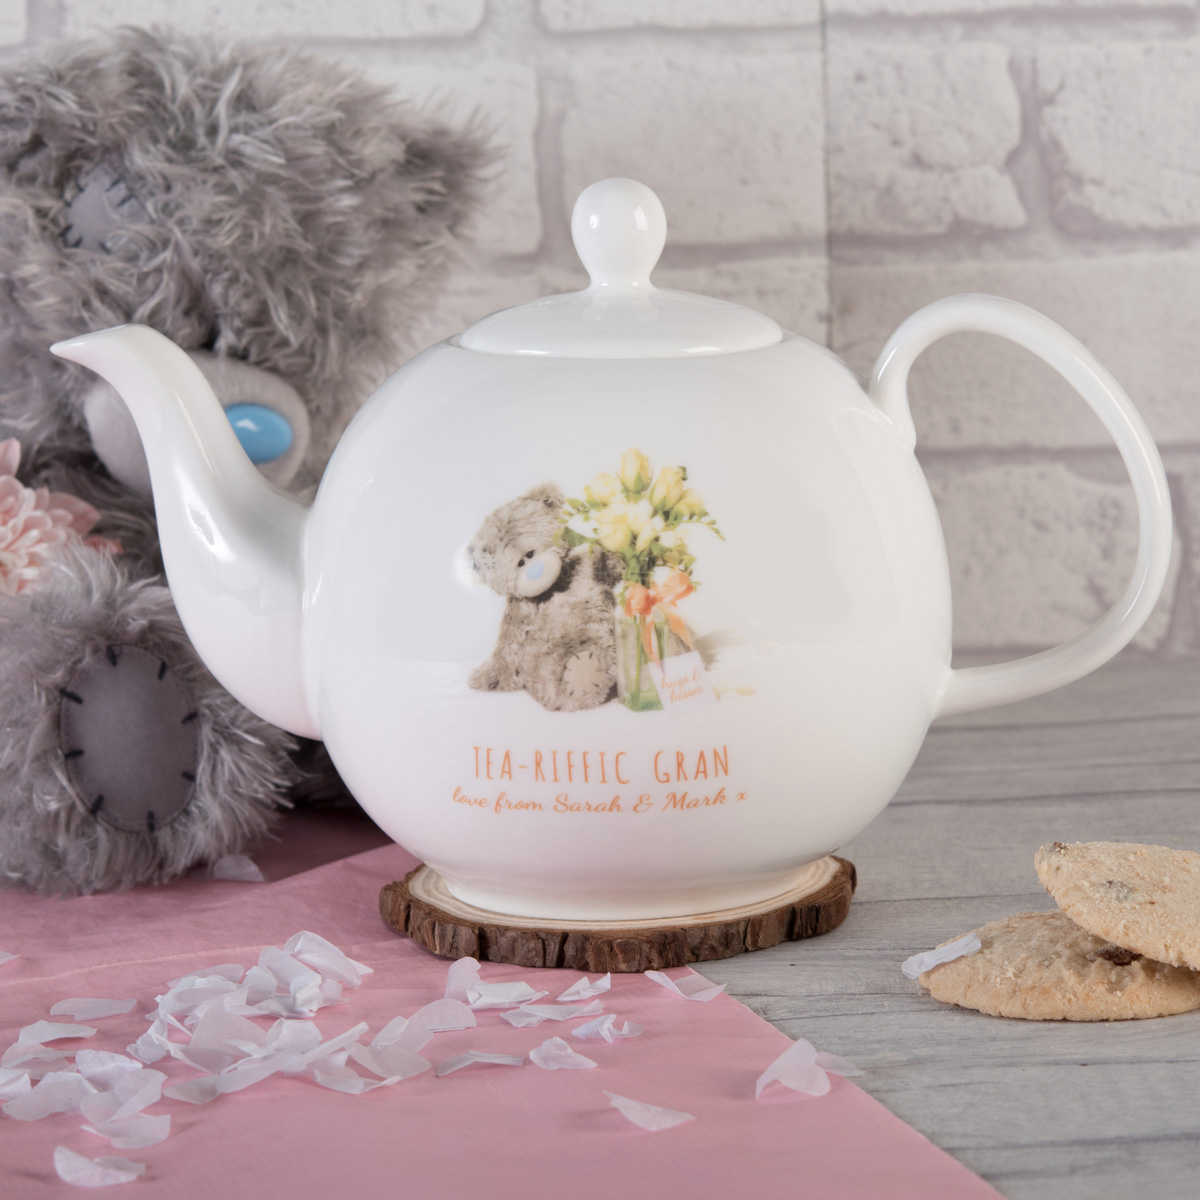 Personalised Me To You Bone China Teapot - Tea-Riffic